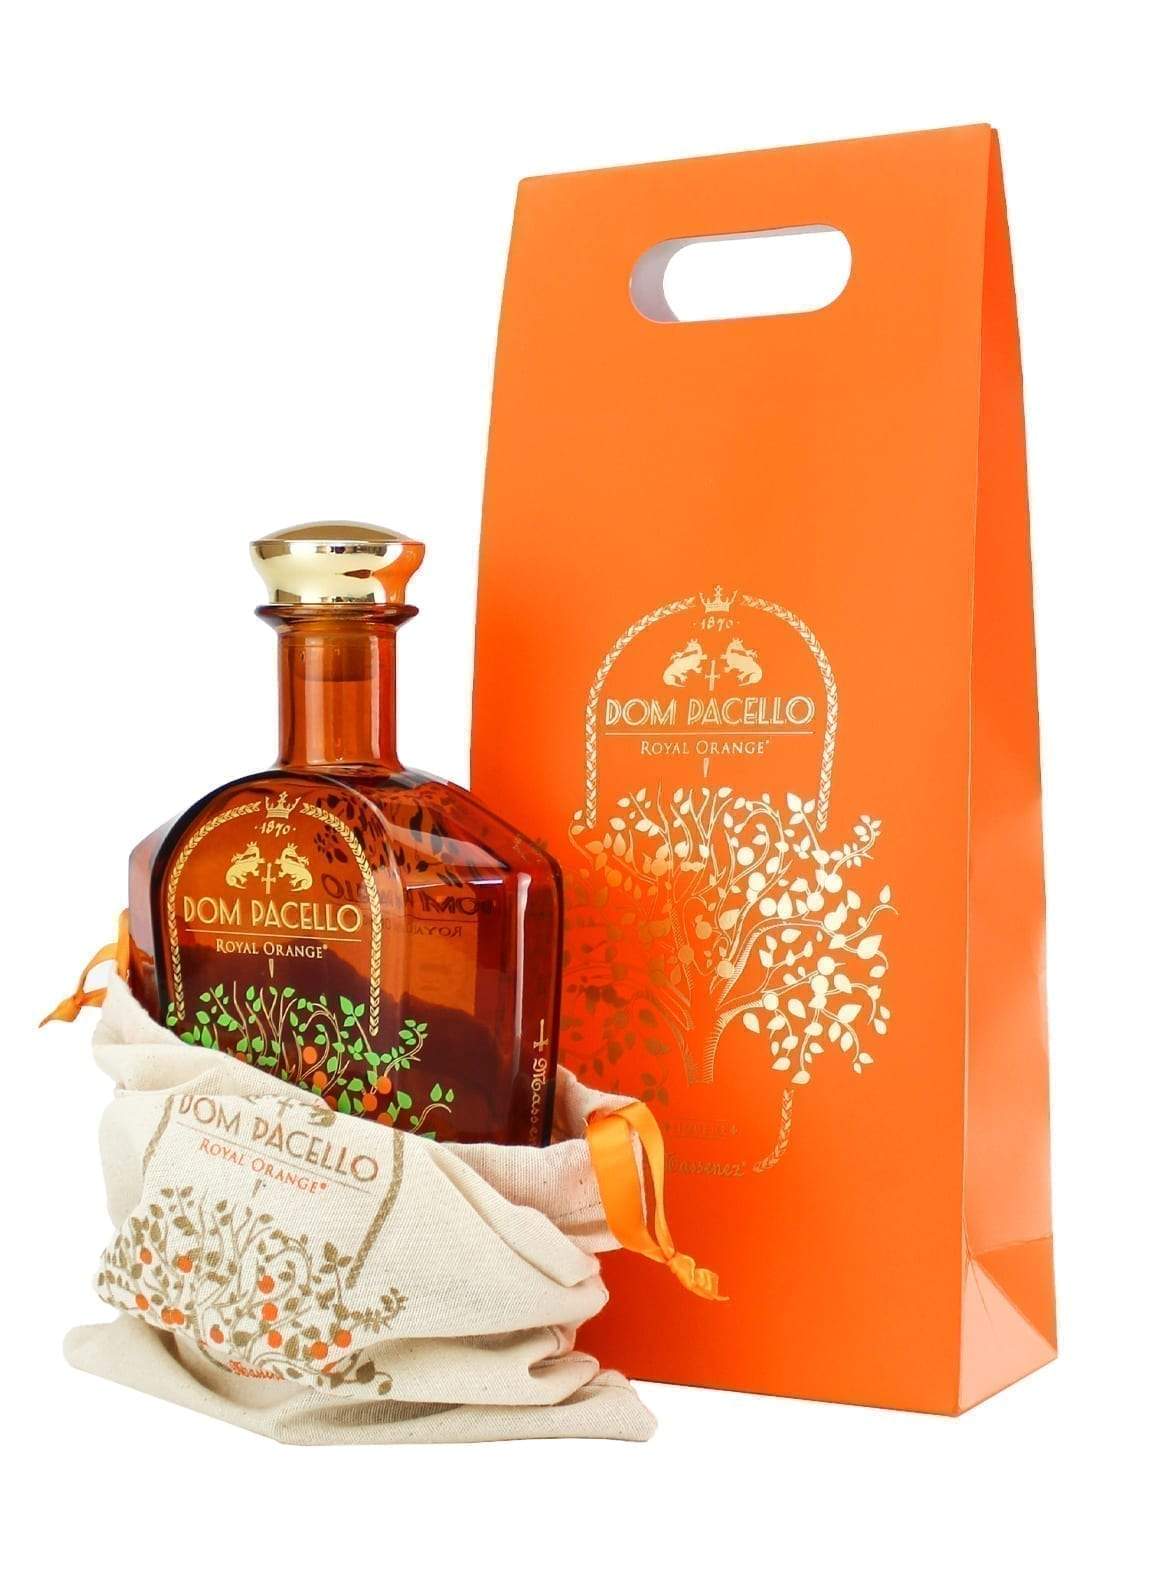 Massenez Dom Pacello orange liqueur 40% 700ml | Liqueurs | Shop online at Spirits of France